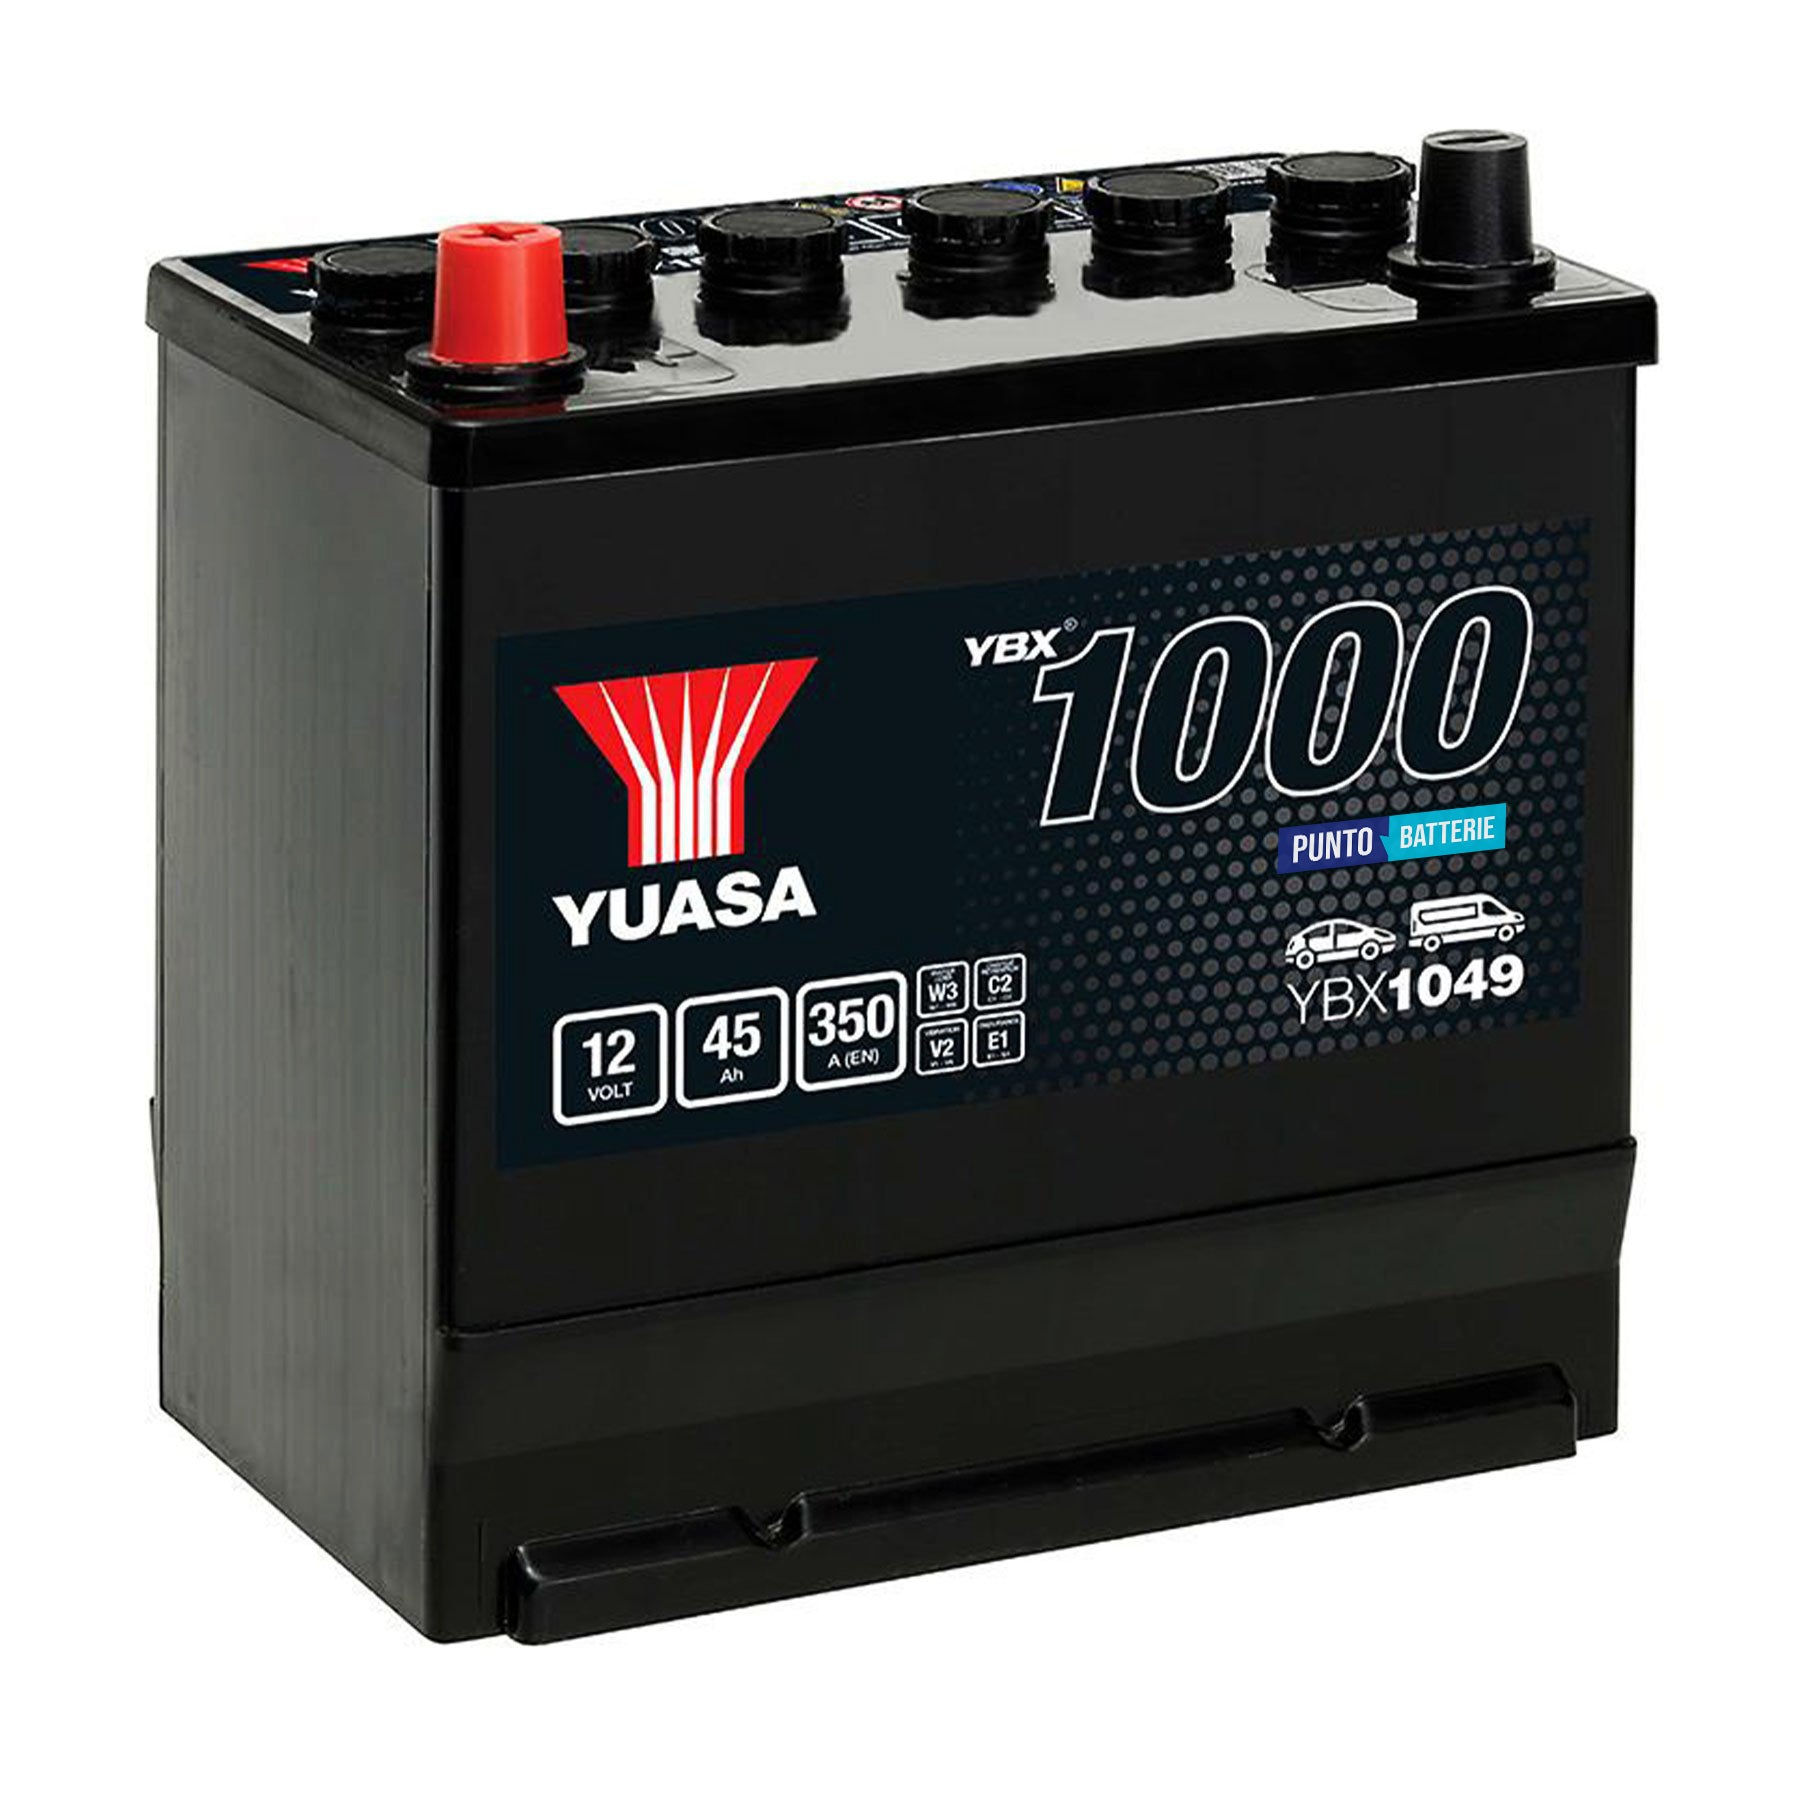 Batteria originale Yuasa YBX1000 YBX1049, dimensioni 220 x 135 x 225, polo positivo a sinistra, 12 volt, 45 amperora, 350 ampere. Batteria per auto e veicoli leggeri.